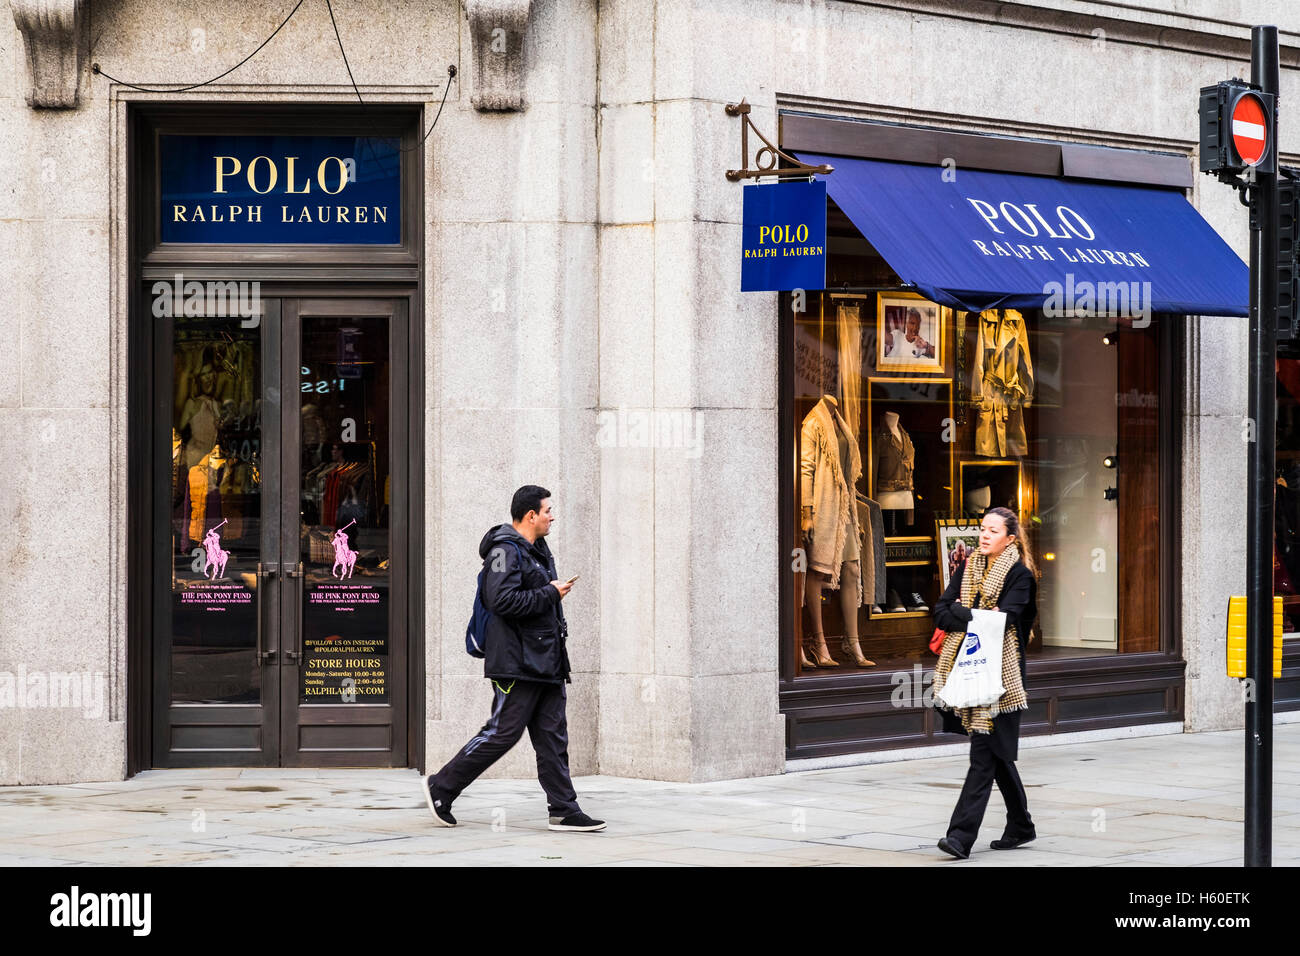 Polo Ralph Lauren store, Regent Street 